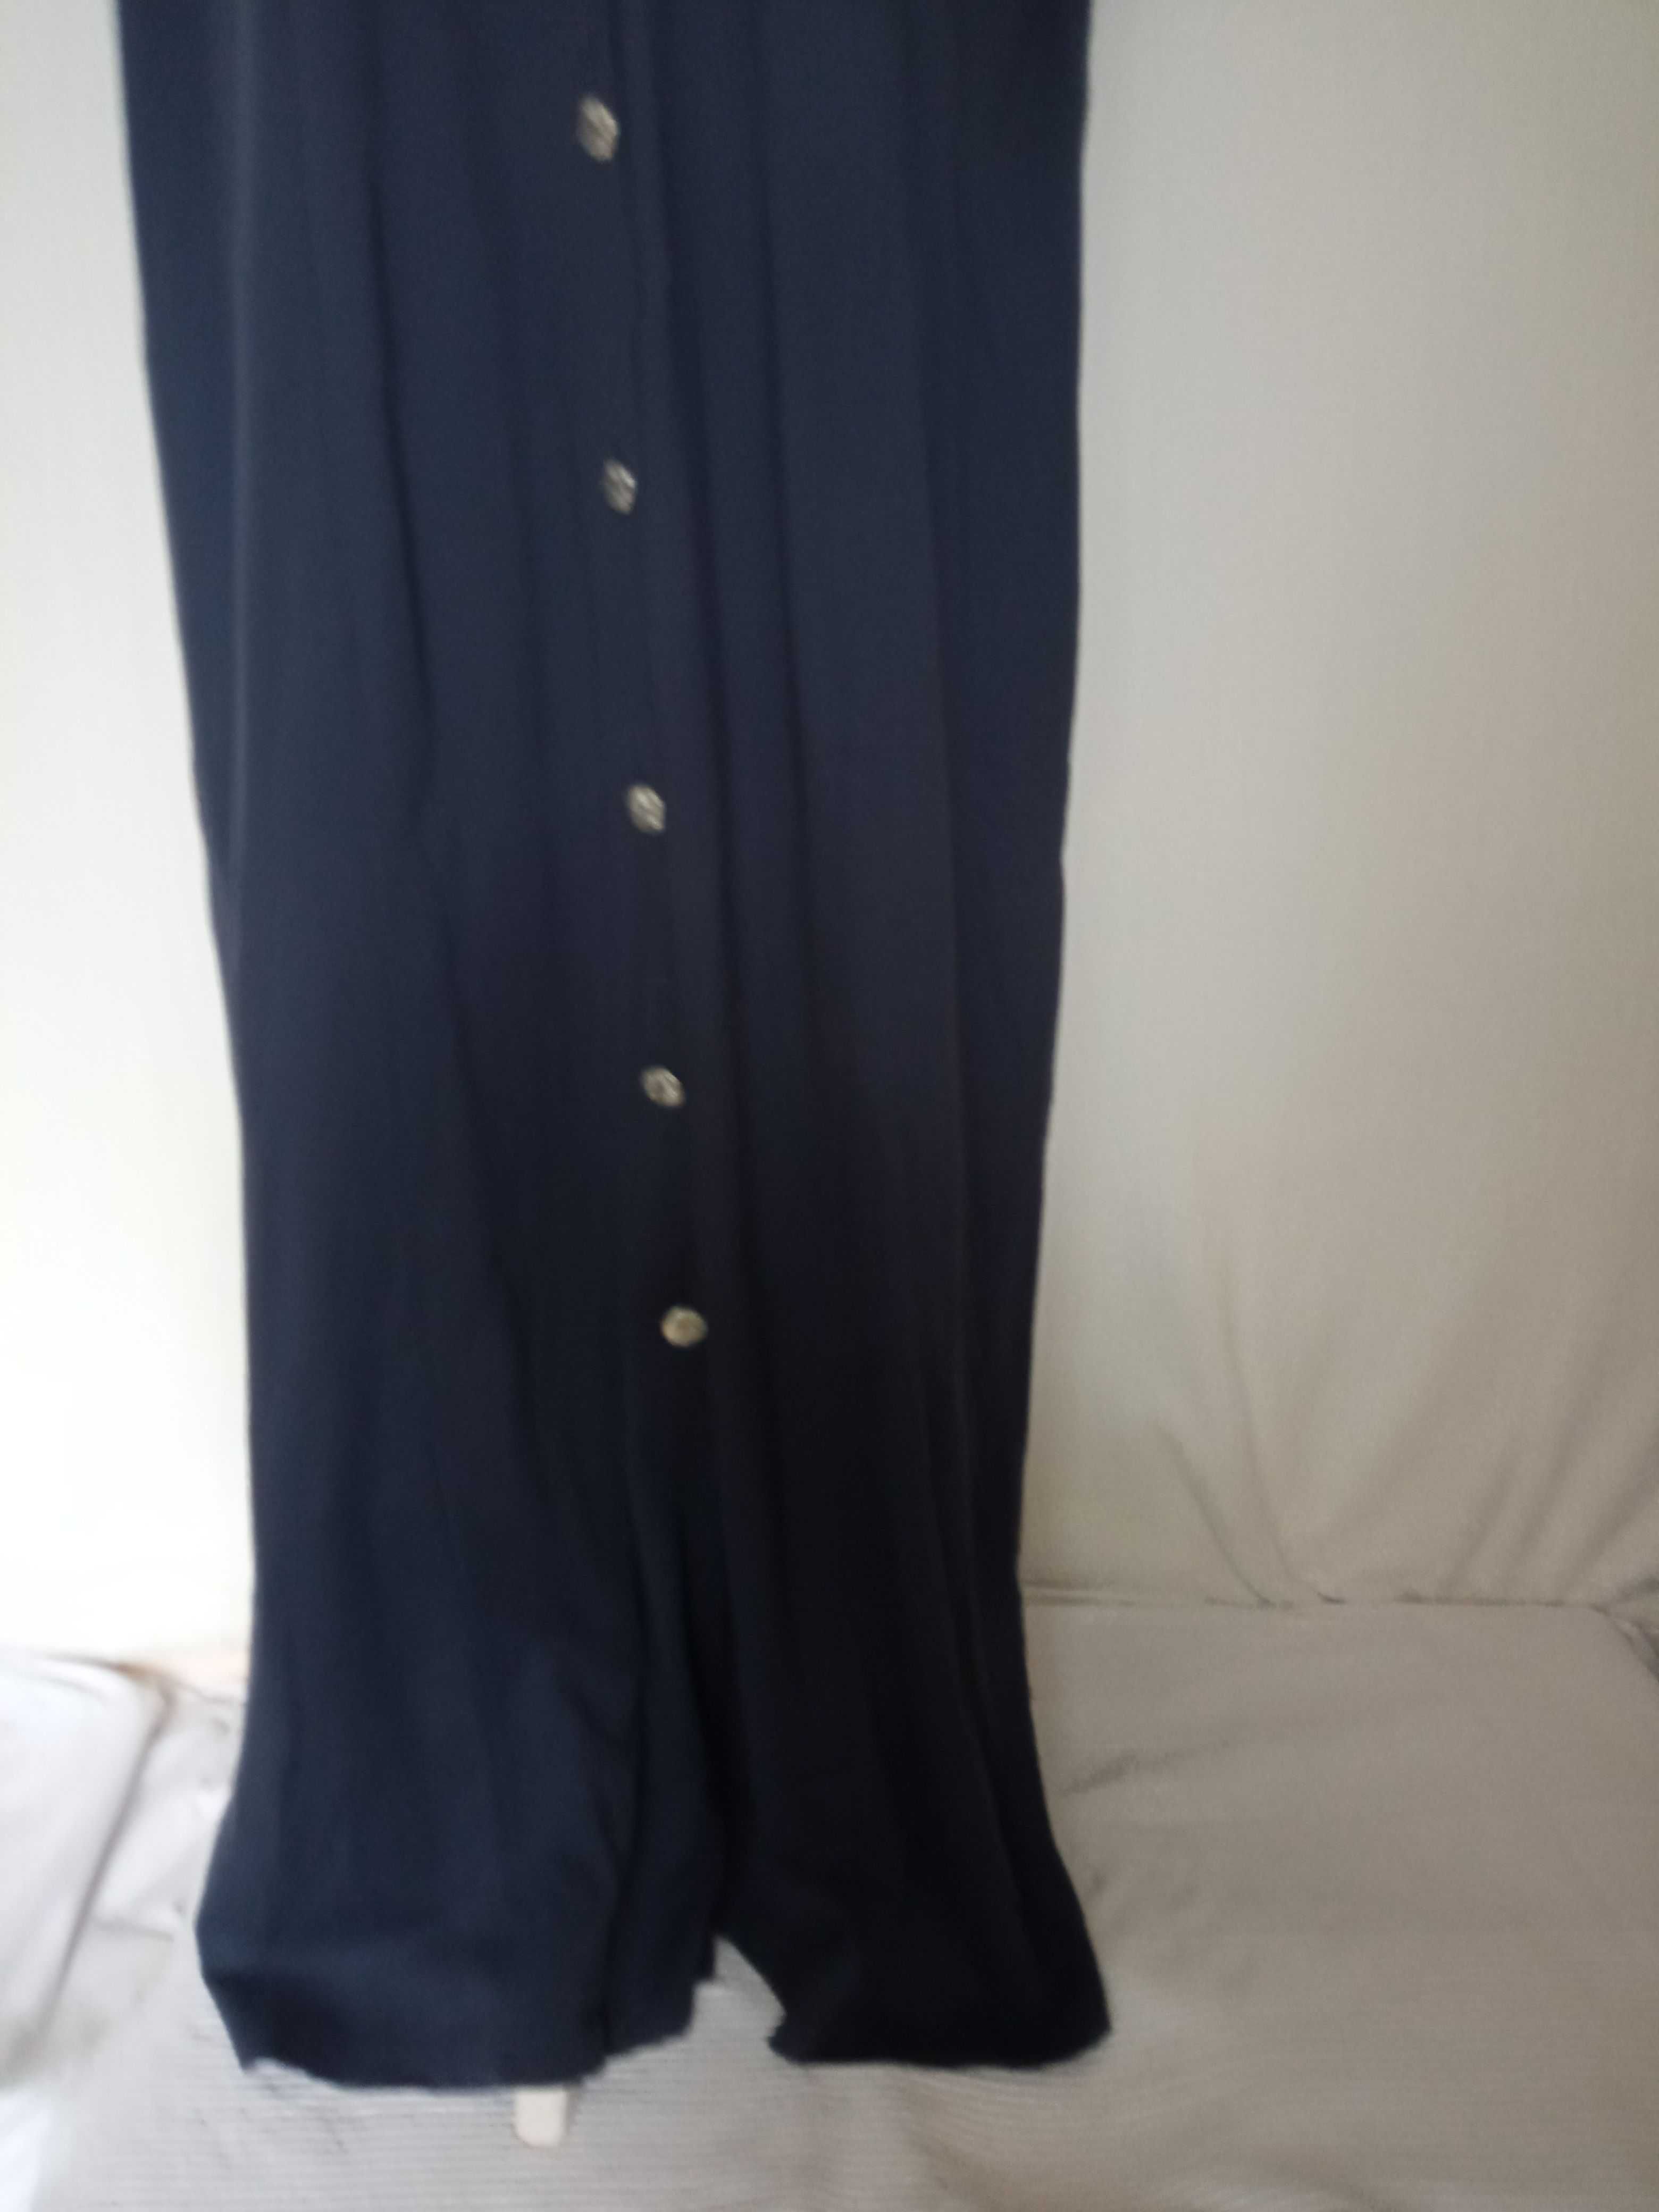 Damska sukienka dzianinowa bawełna r XXXL dł 136cm